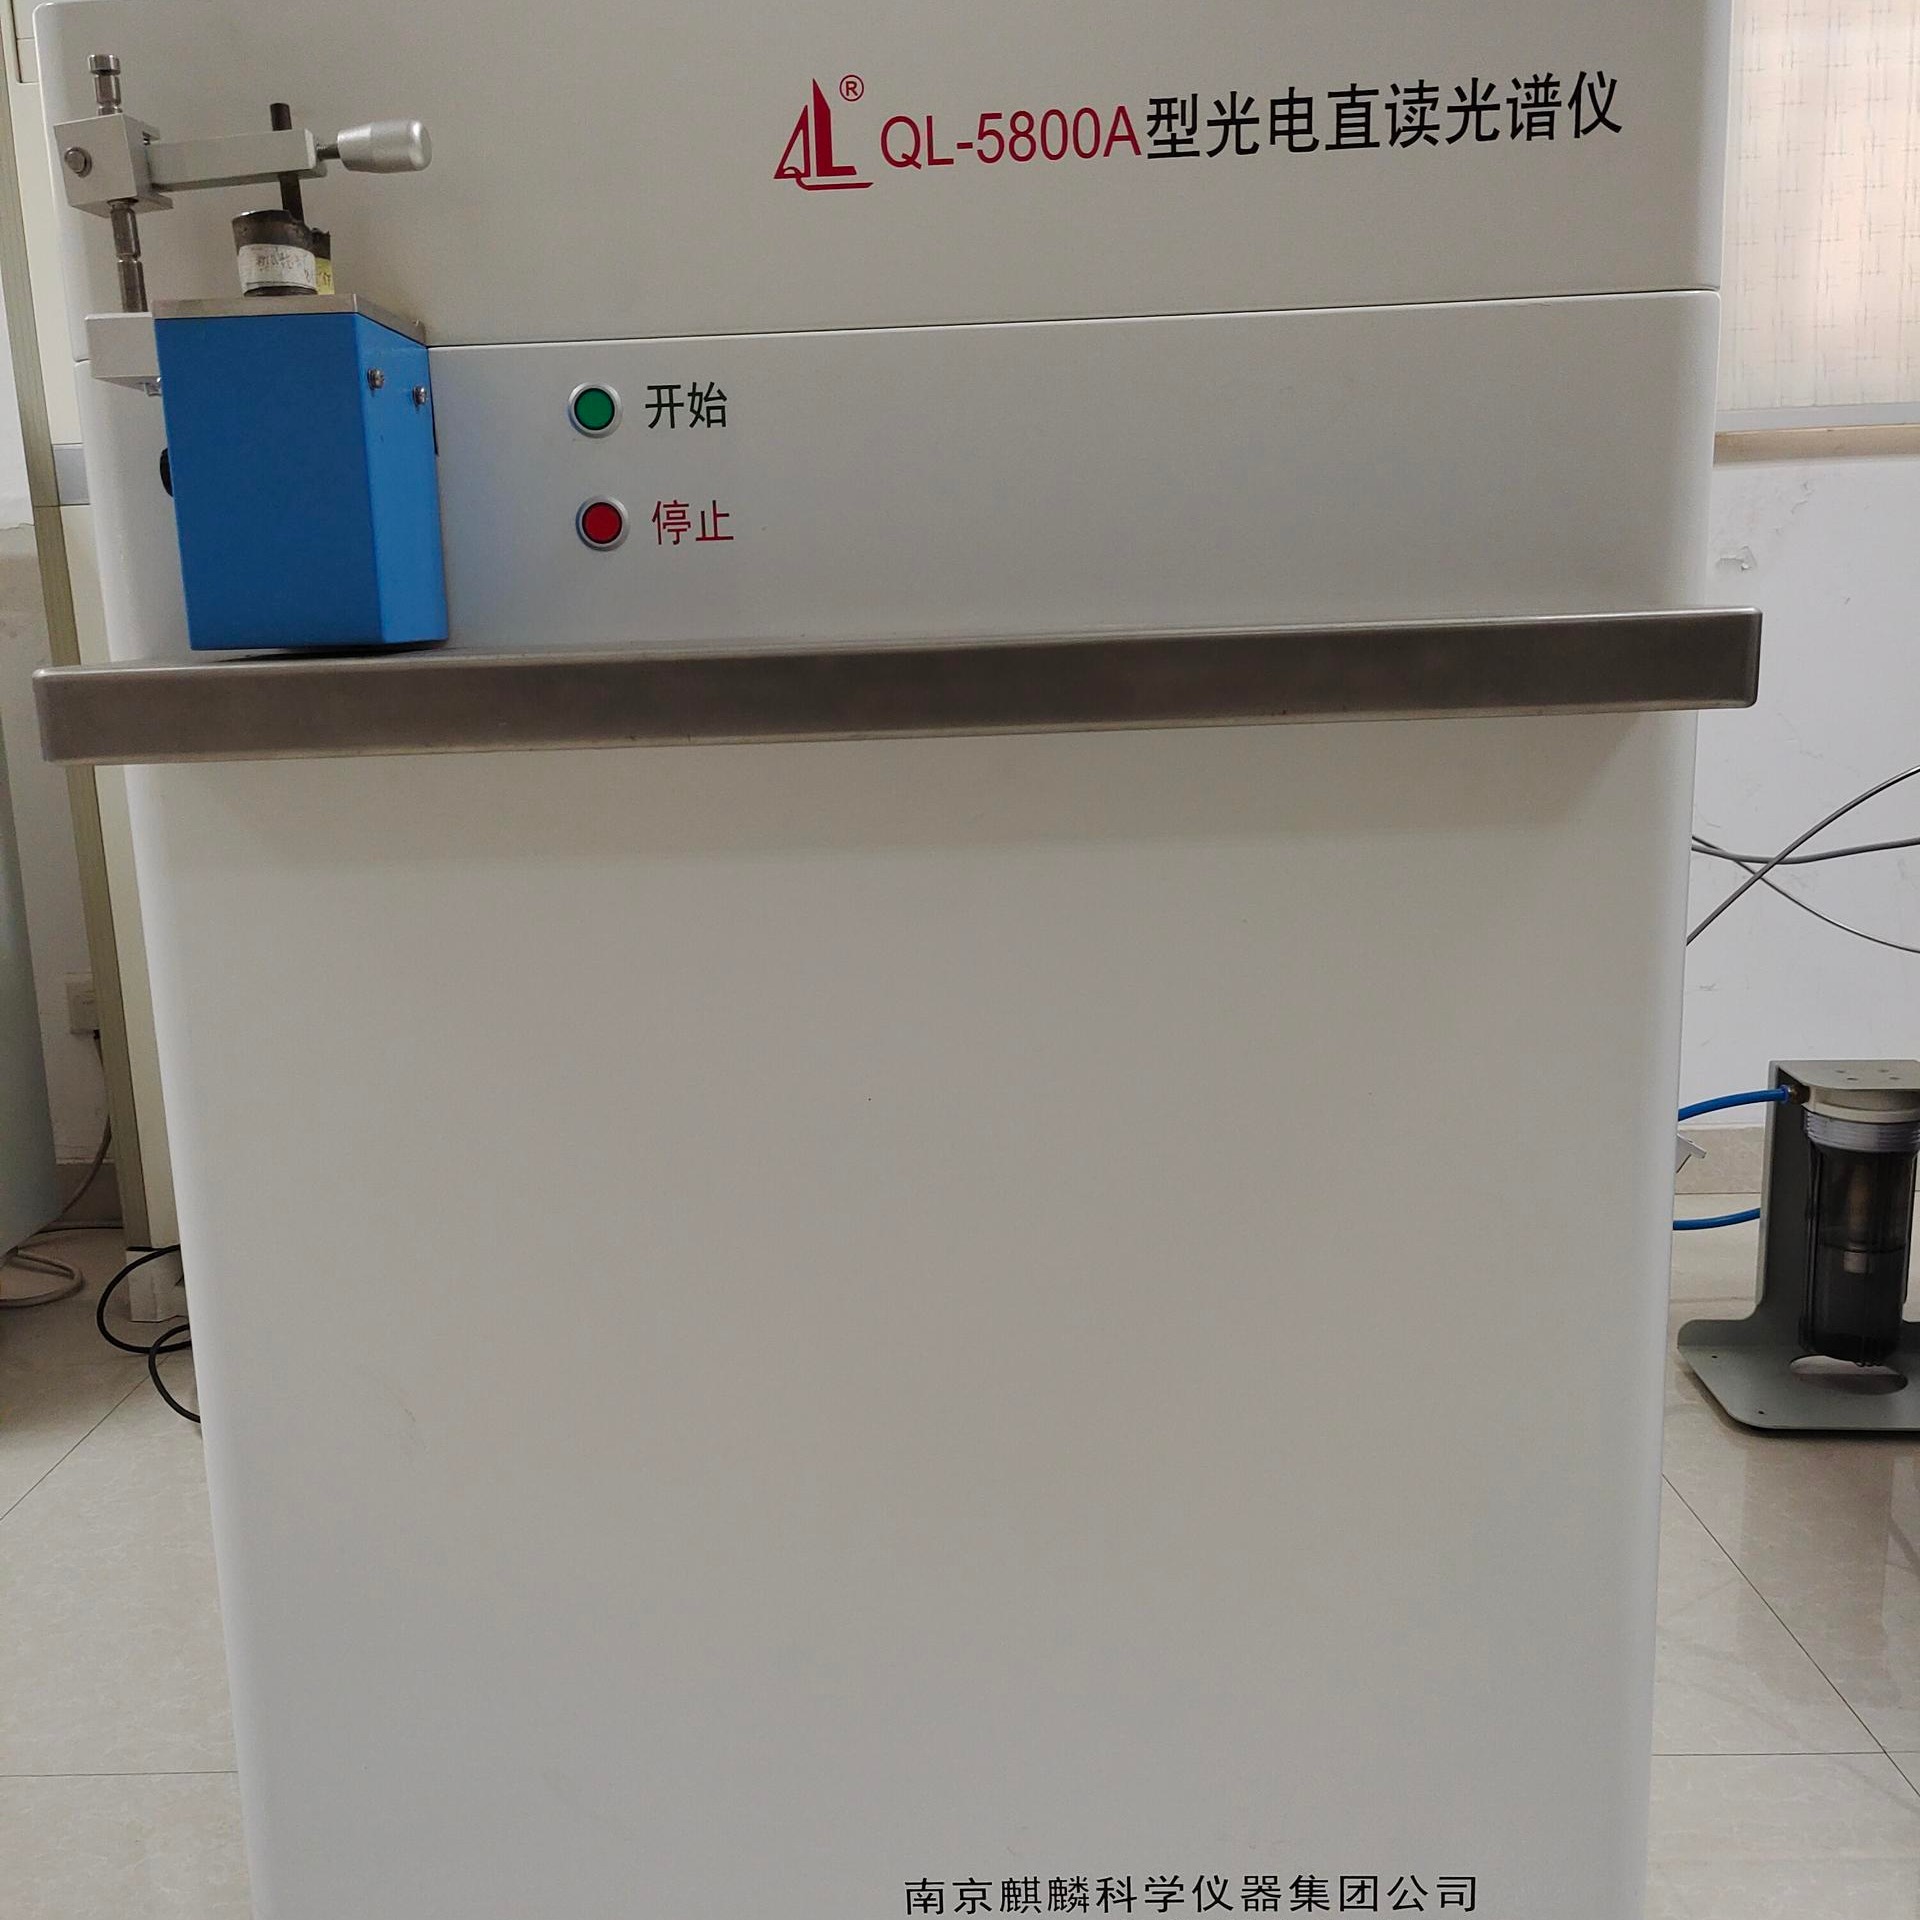 南京麒麟直供 QL-5800A型不锈钢直读光谱仪